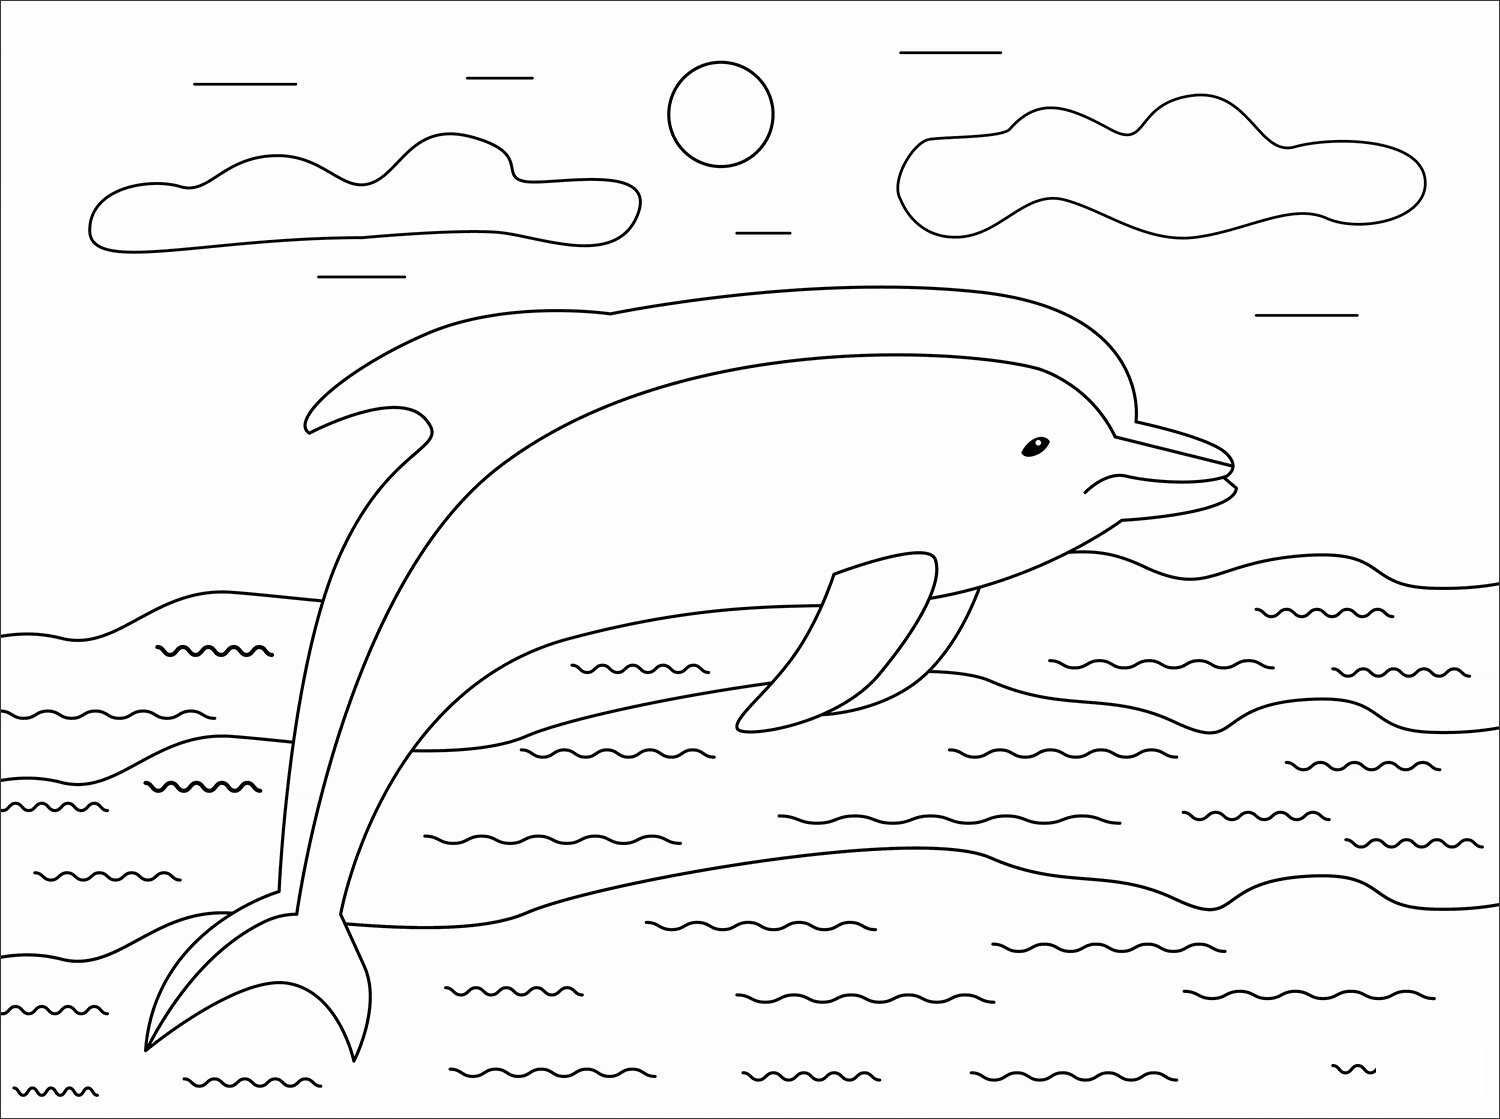 De kortsnuitdolfijn zwemt in de zon van Dolphin